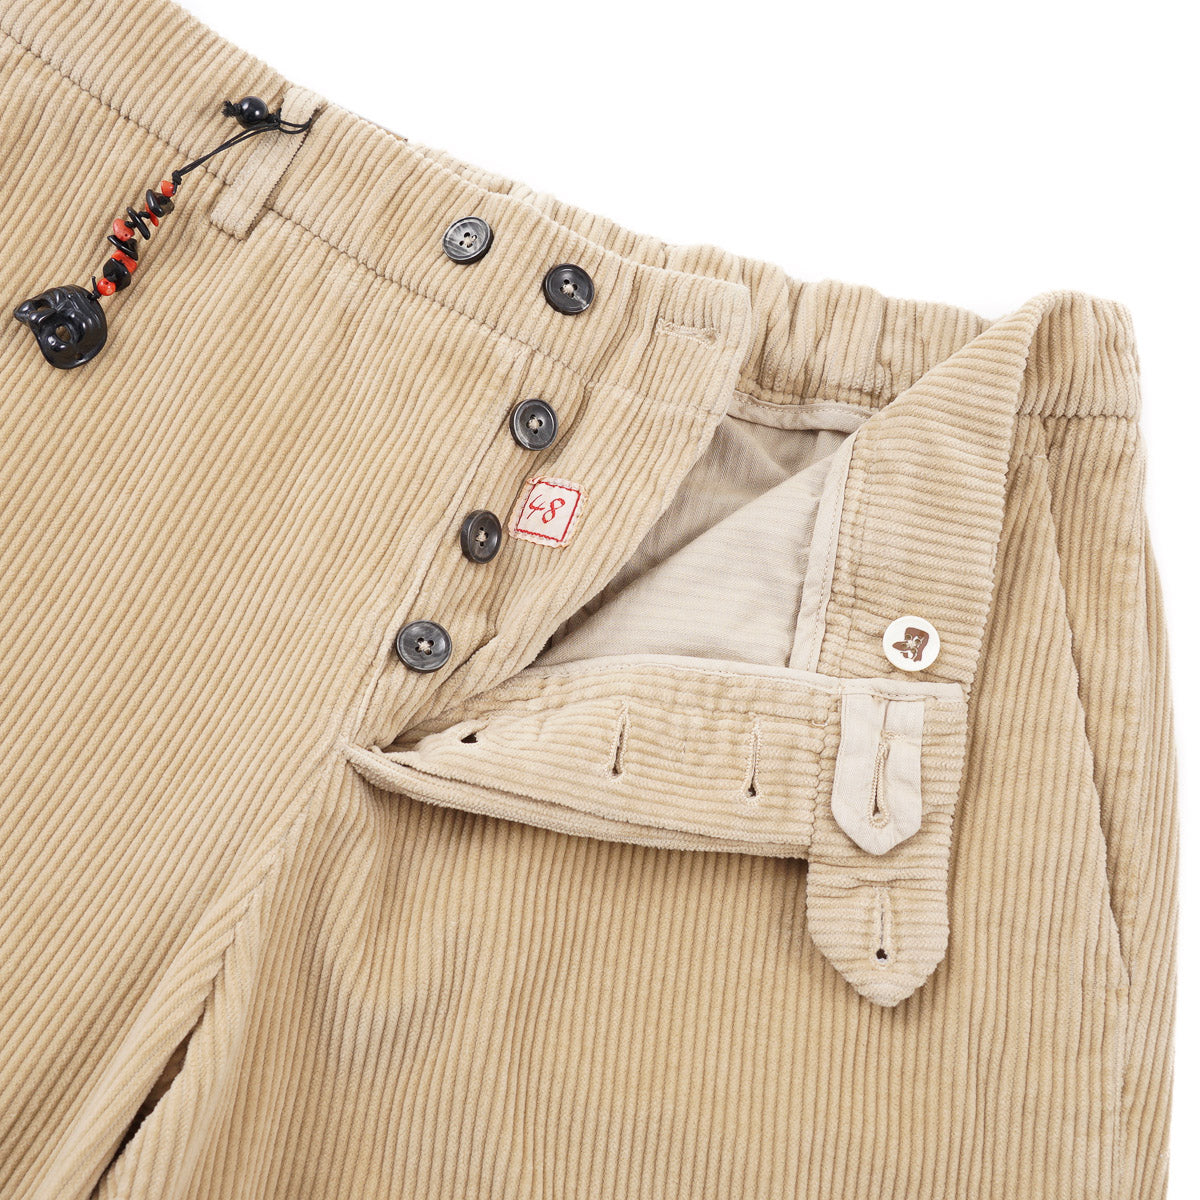 Marco Pescarolo Slim-Fit Corduroy Pants - Top Shelf Apparel